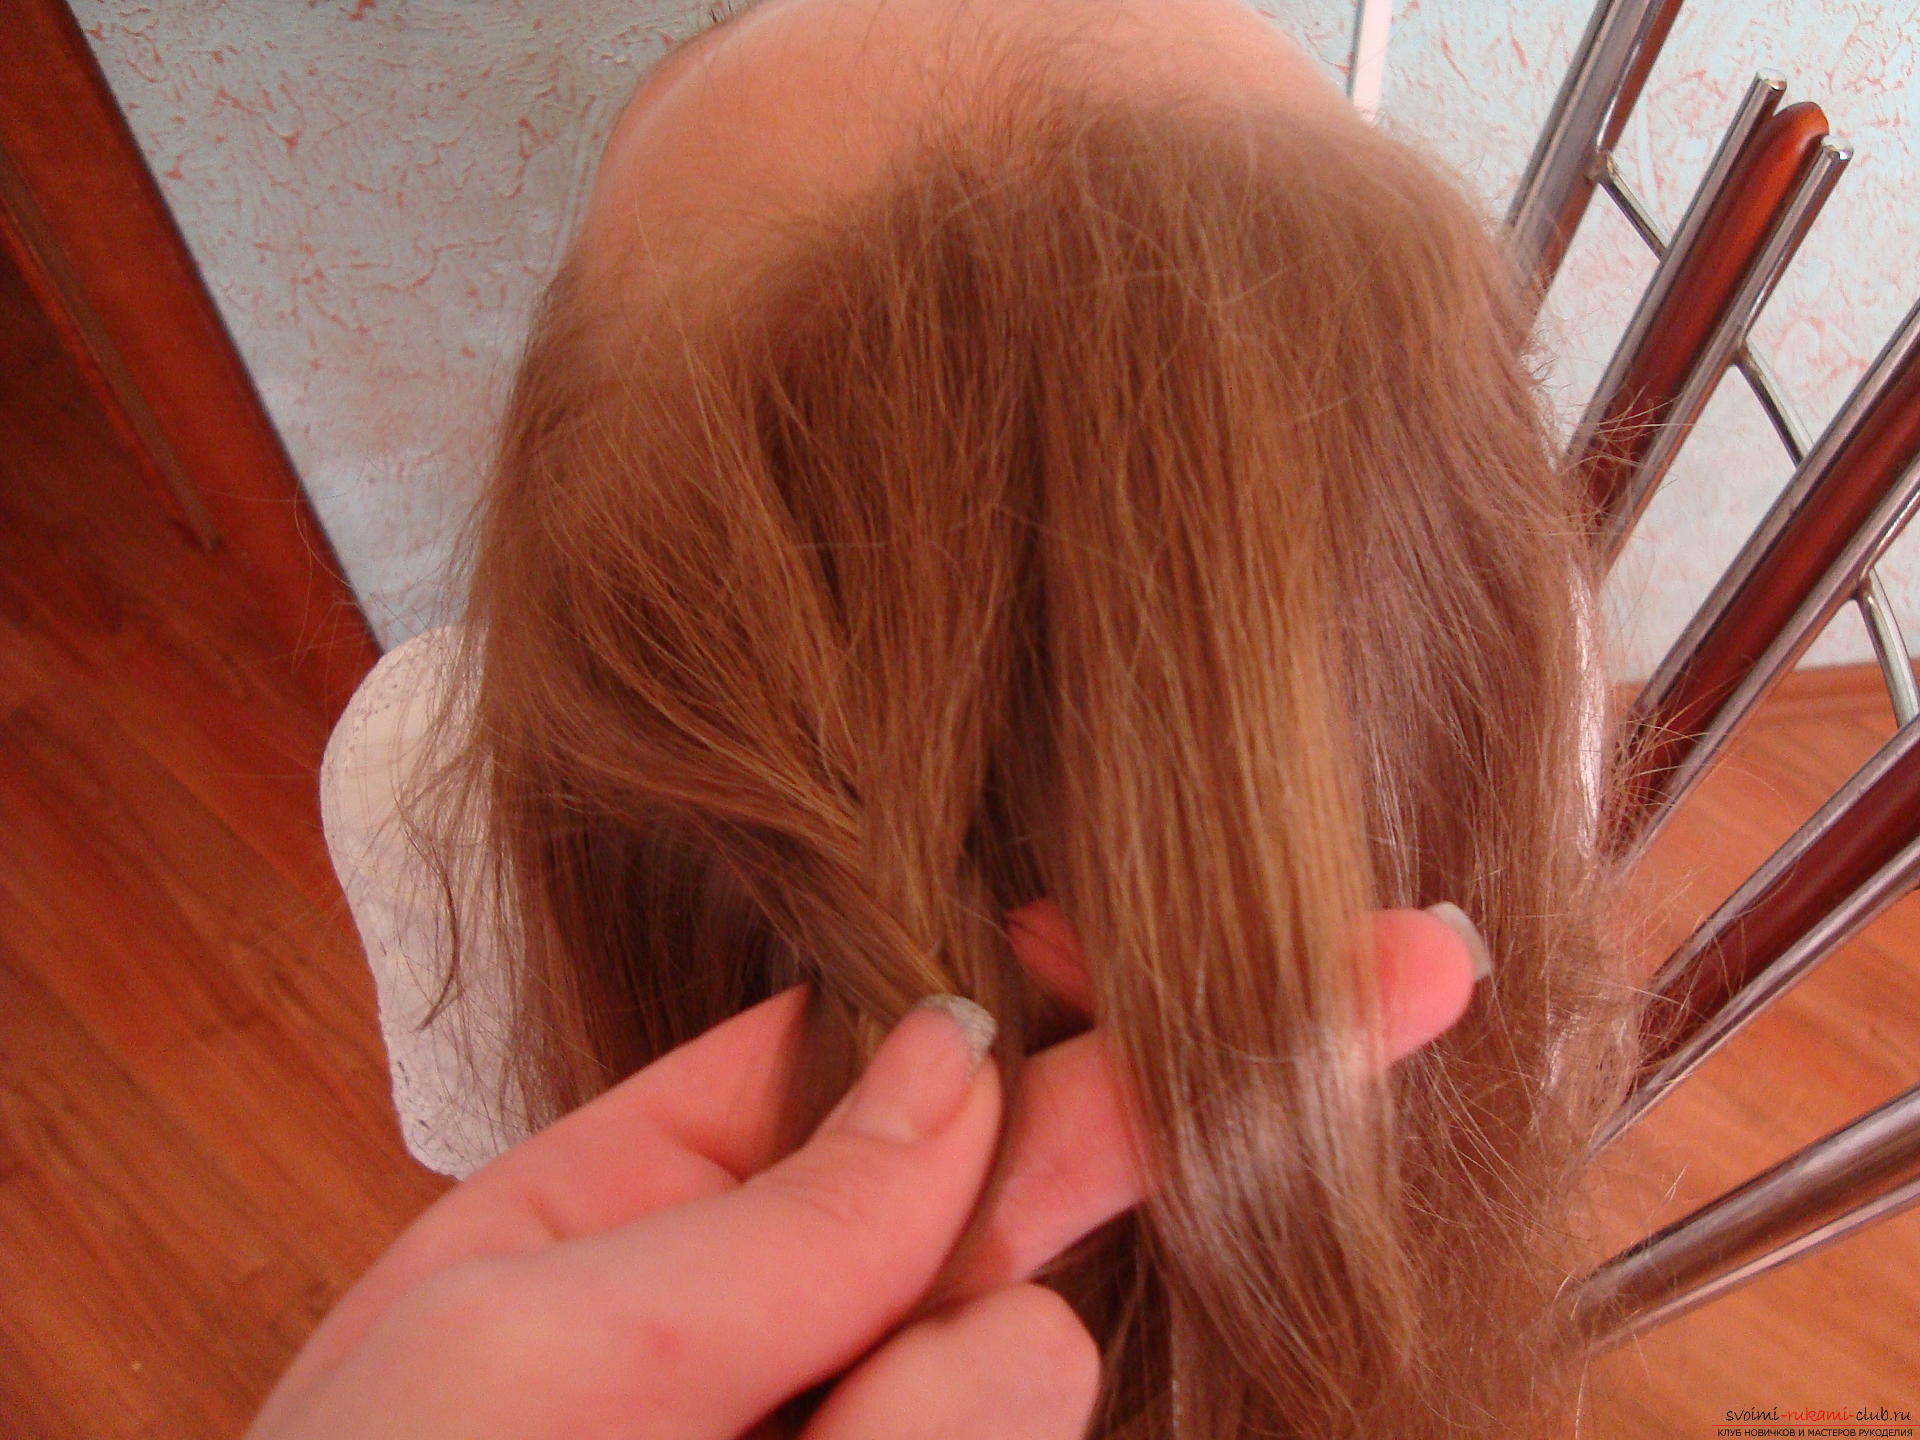 Как заплести красивую косу в технике плетения колосок? Урок по плетению косы с подробными рекомендациями, фото и видео-инструкцией